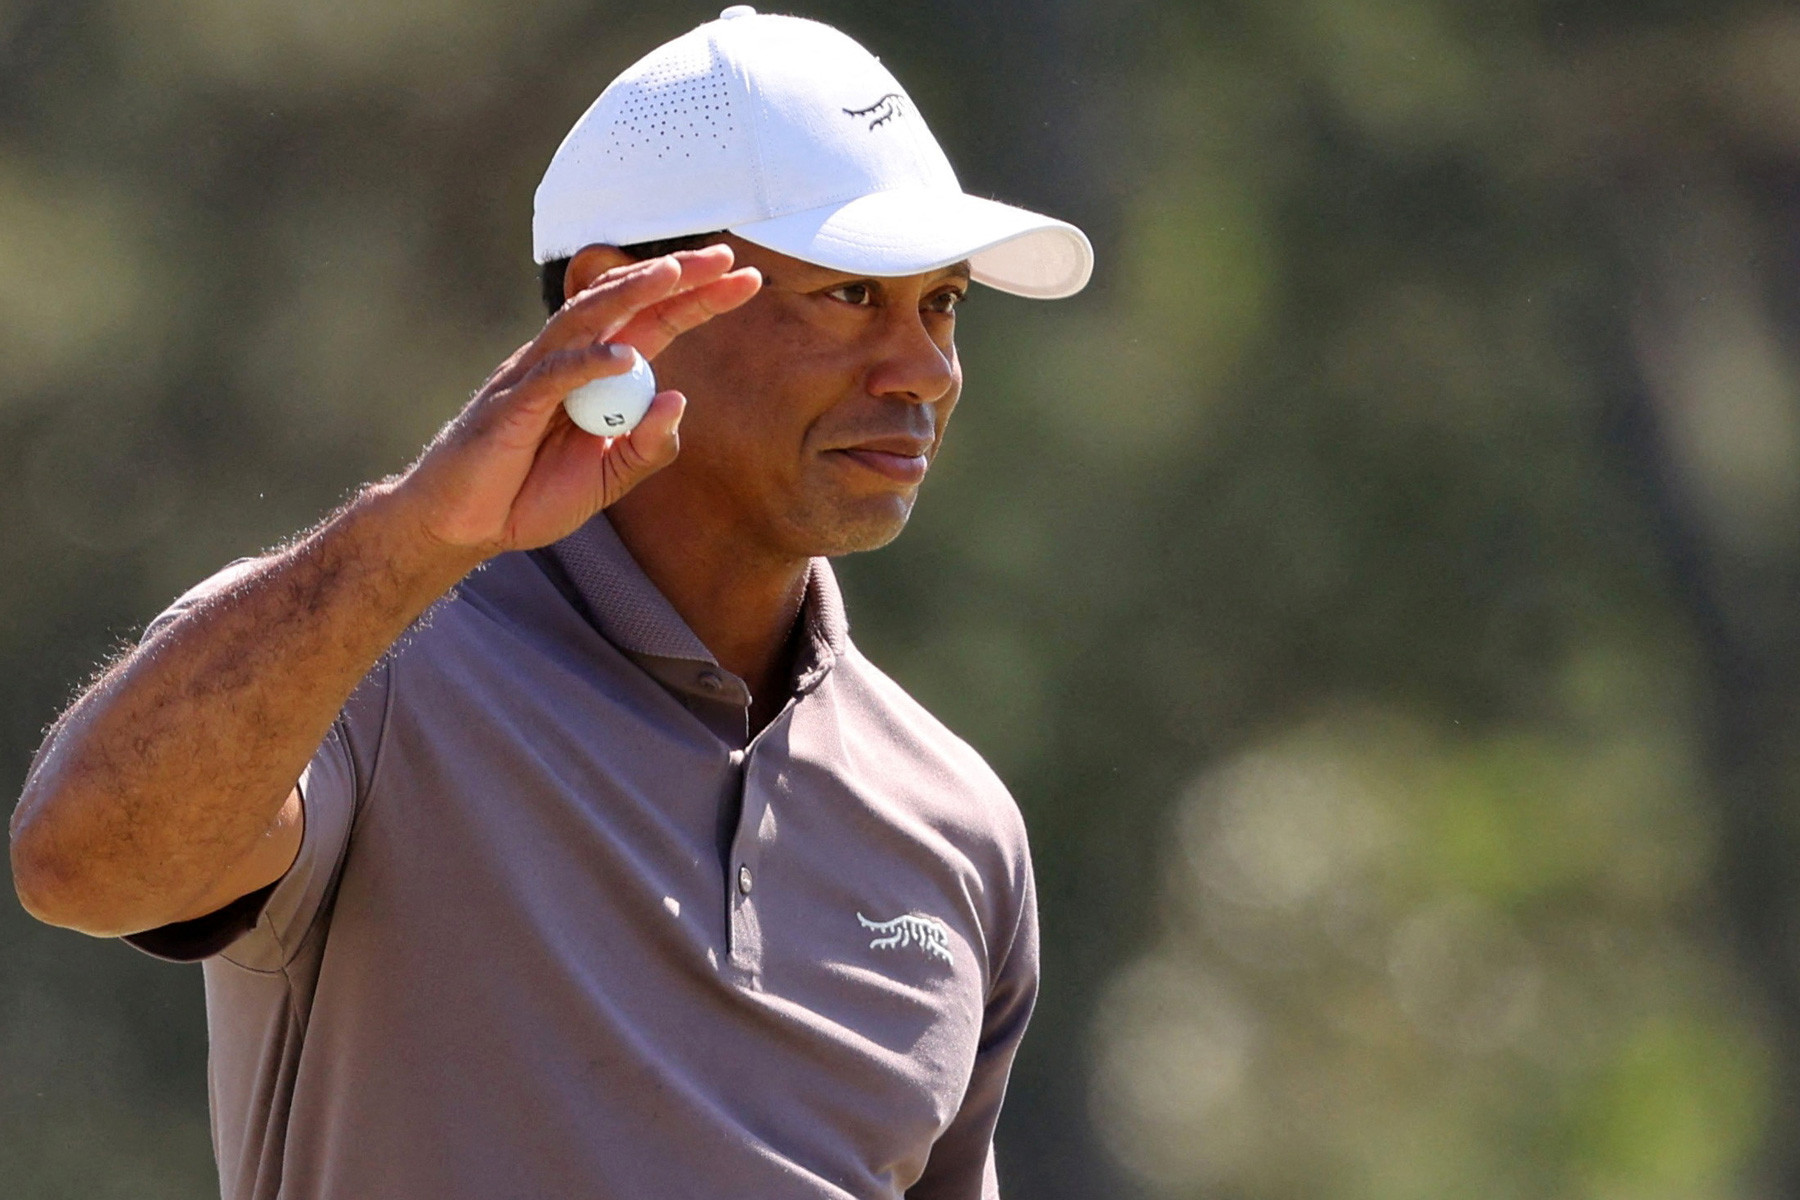 Vòng 2 The Masters: Trang sử mới của Tiger Woods